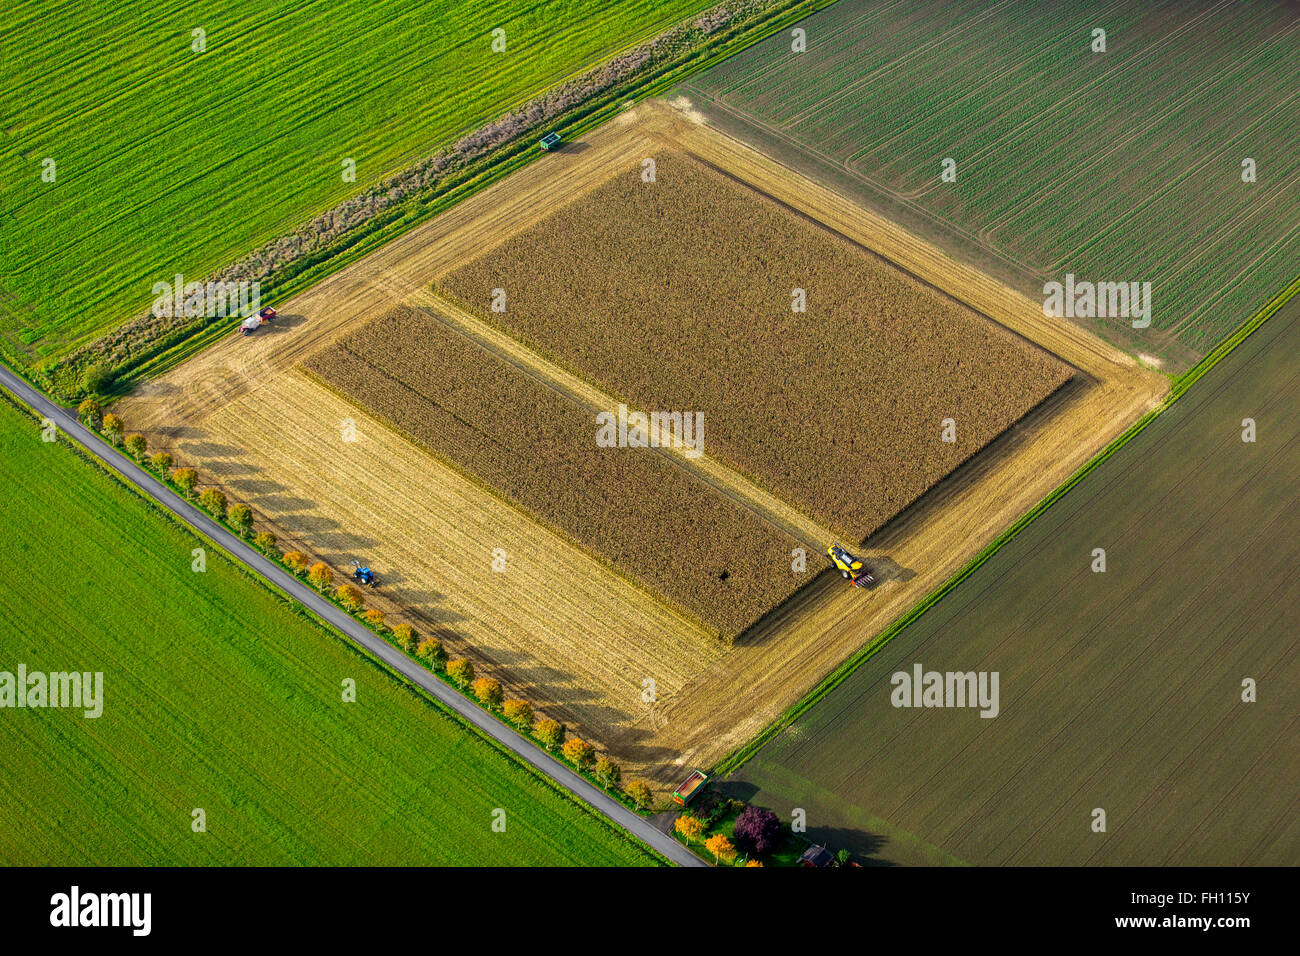 Champ de blé, maïs, la récolte à la moissonneuse-batteuse dans un champ, de l'agriculture, boîte rectangulaire, Dortmund, Ruhr Banque D'Images